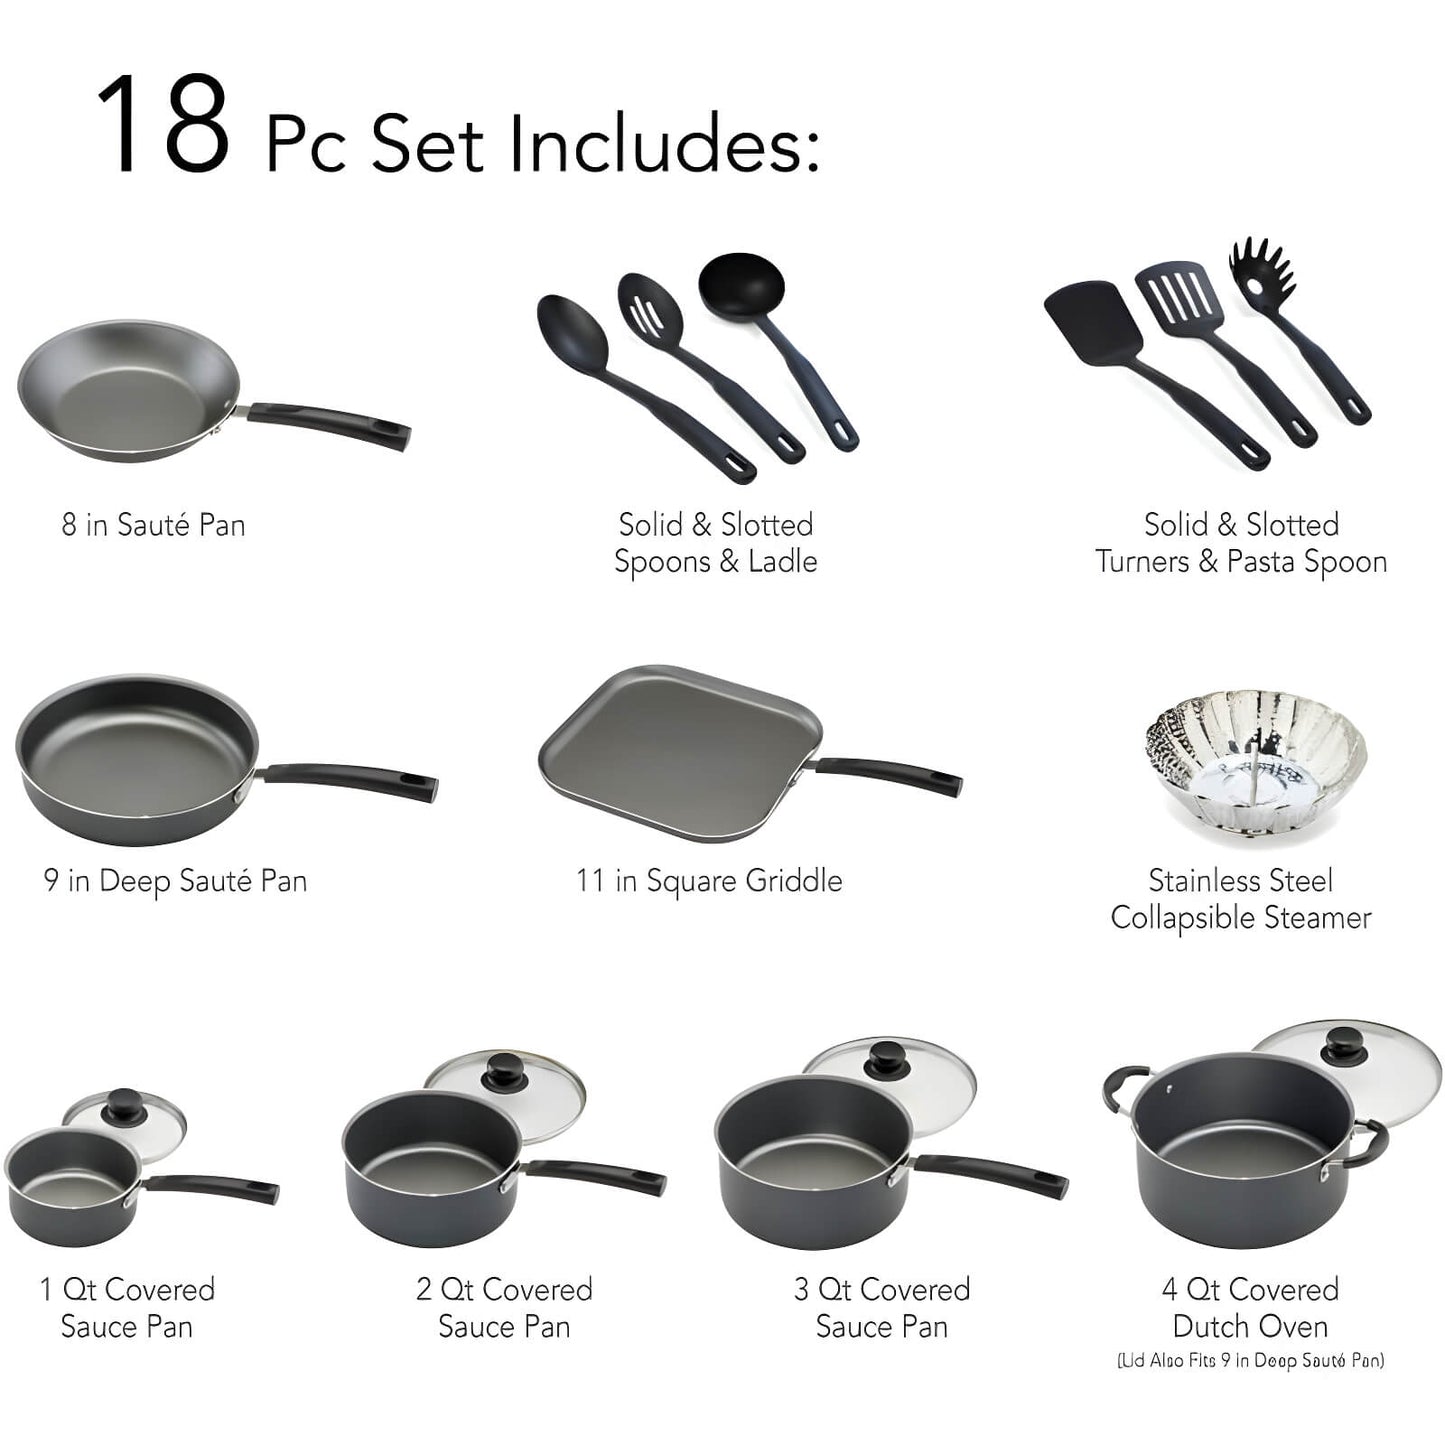 18 Piece Nonstick Cookware Set